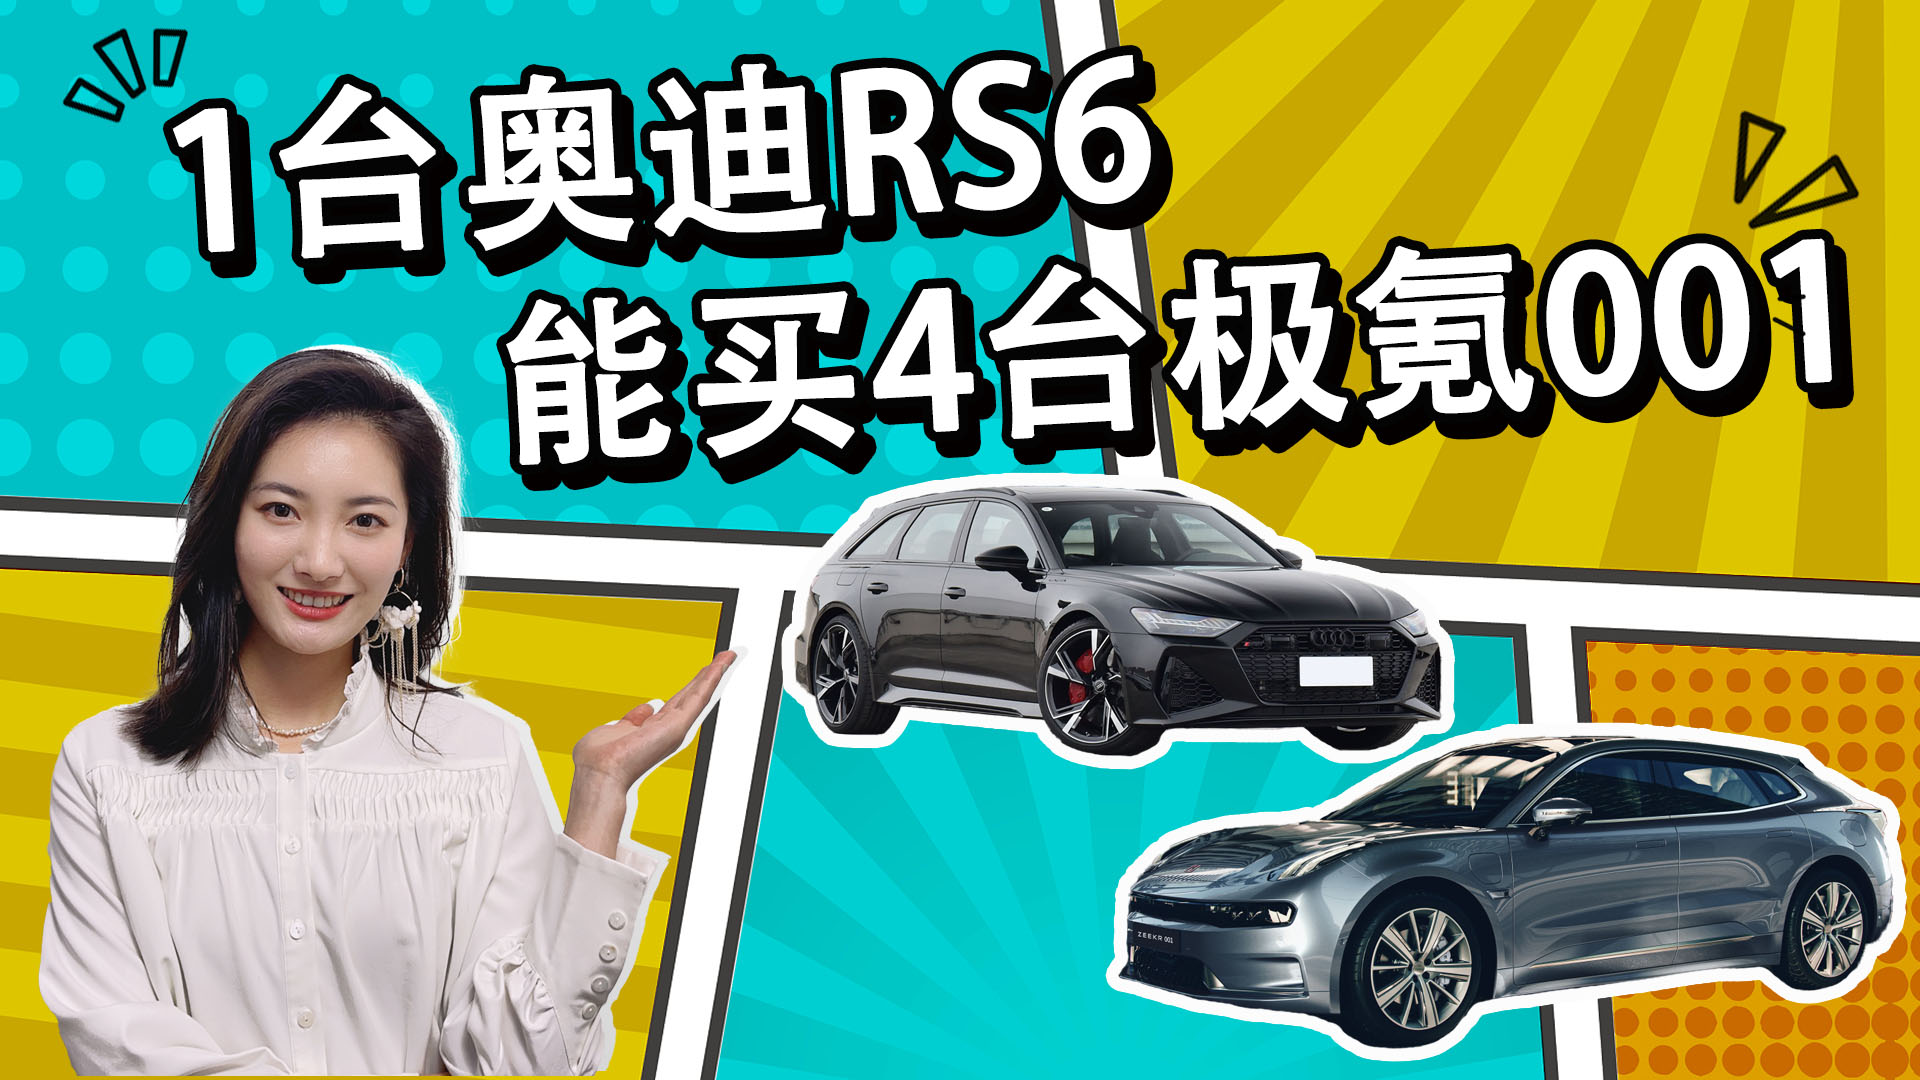 1台奥迪RS6可以买4台极氪001，这两个车居然也能放一起比？视频